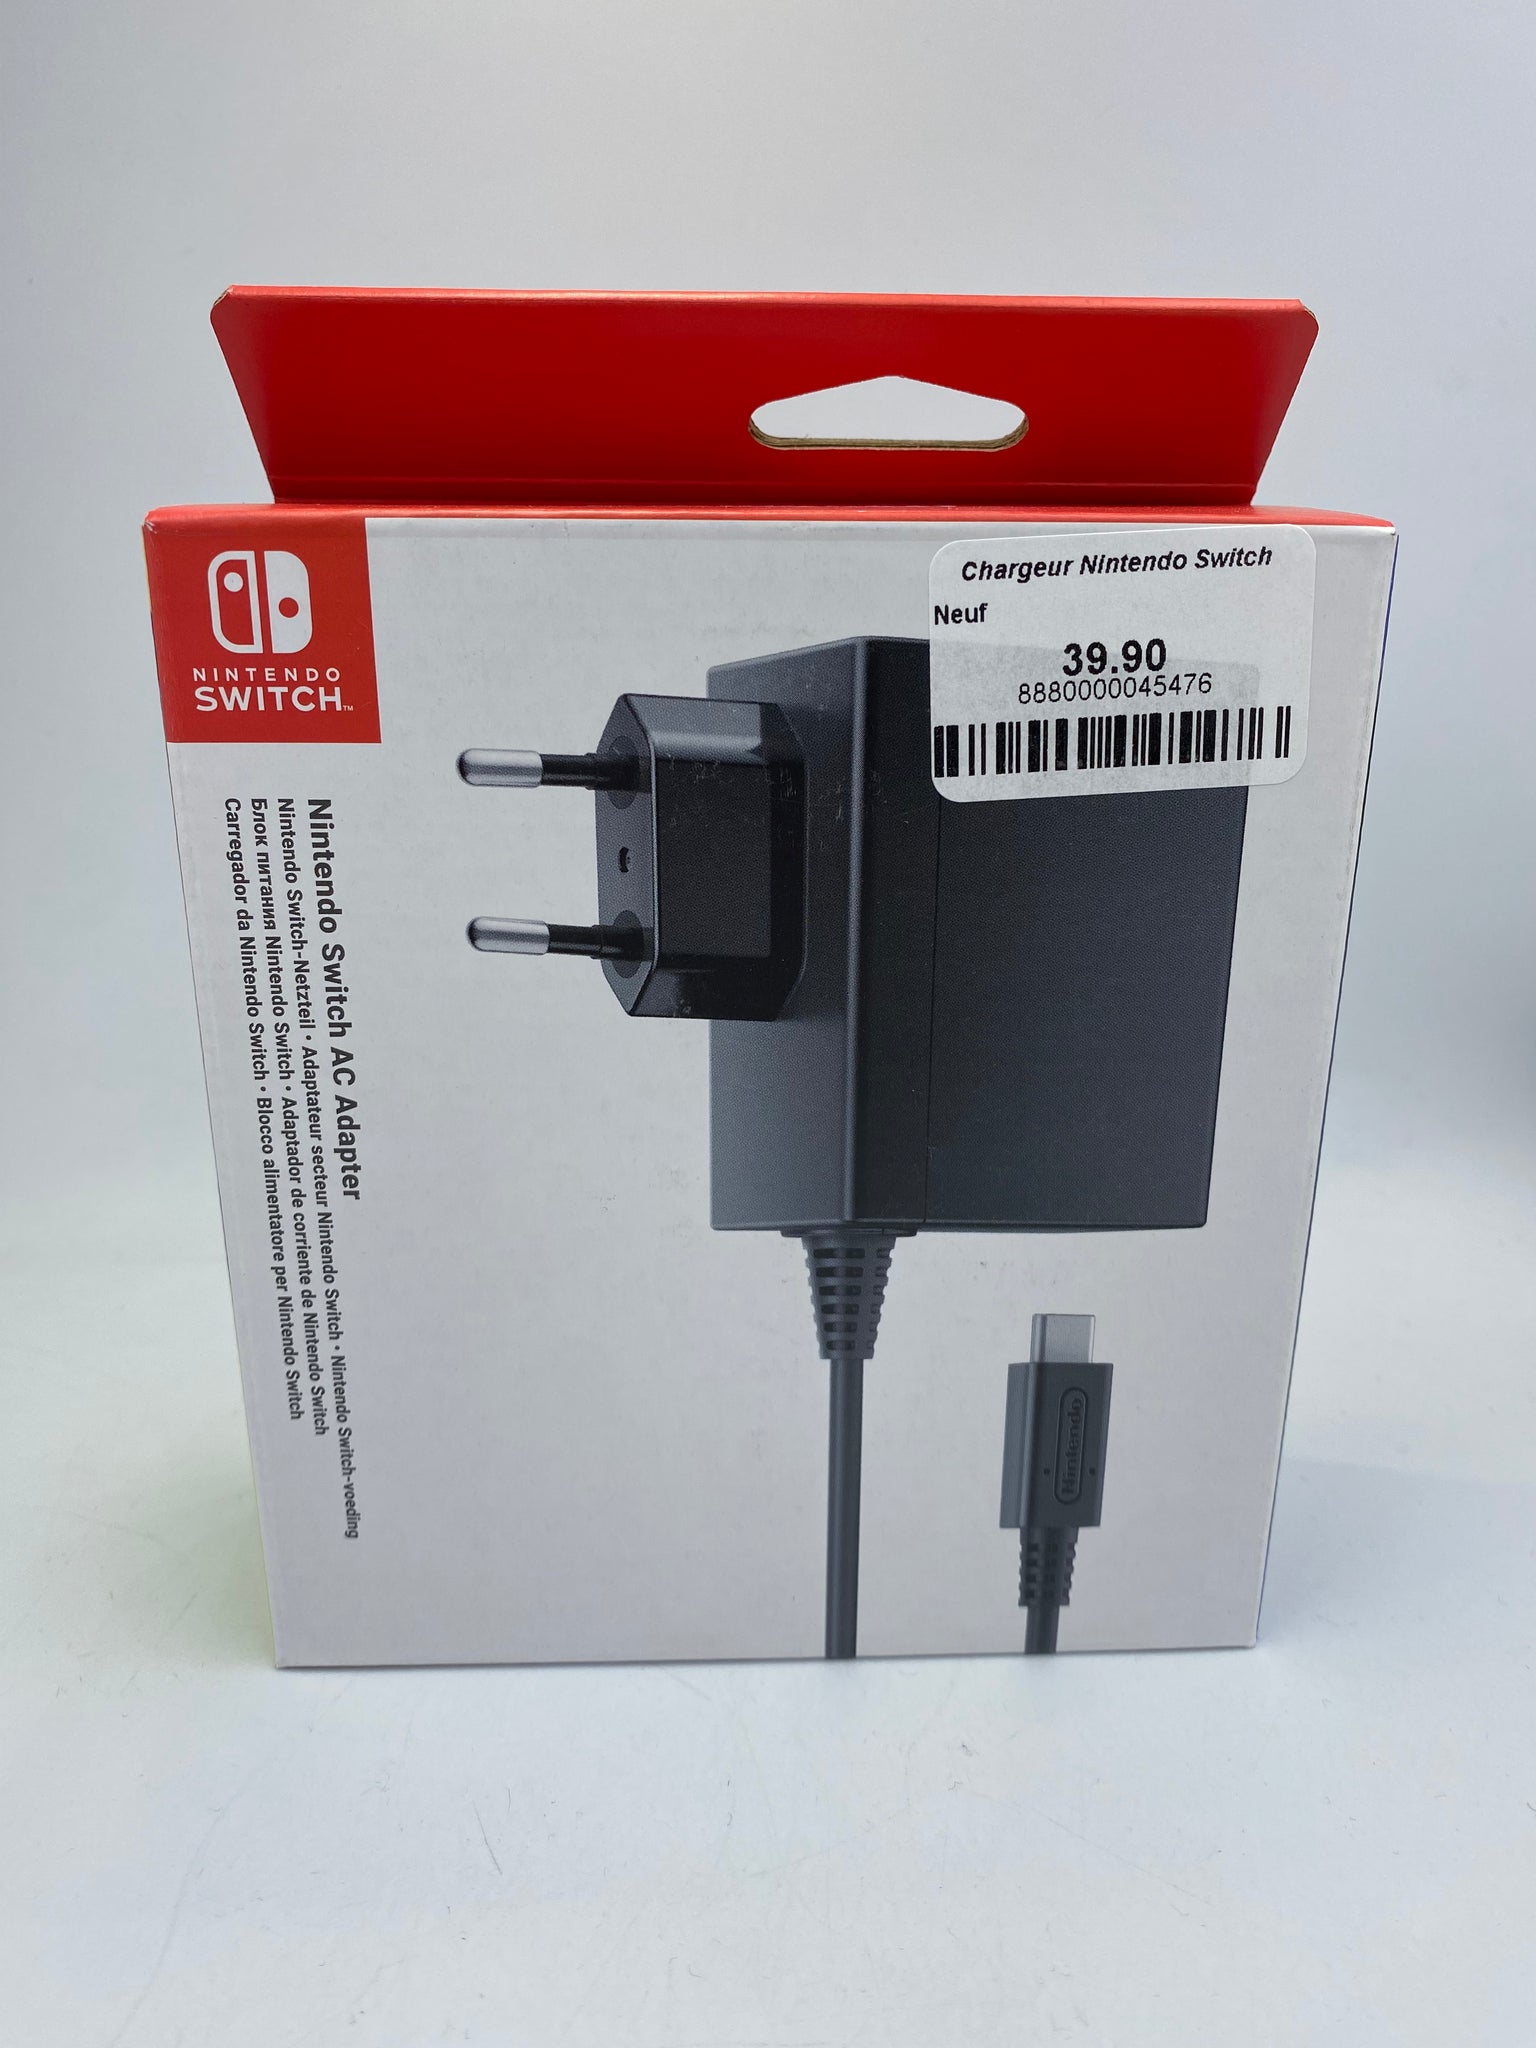 Chargeur Nintendo Switch – Cashfive - Acheter en toute confiance